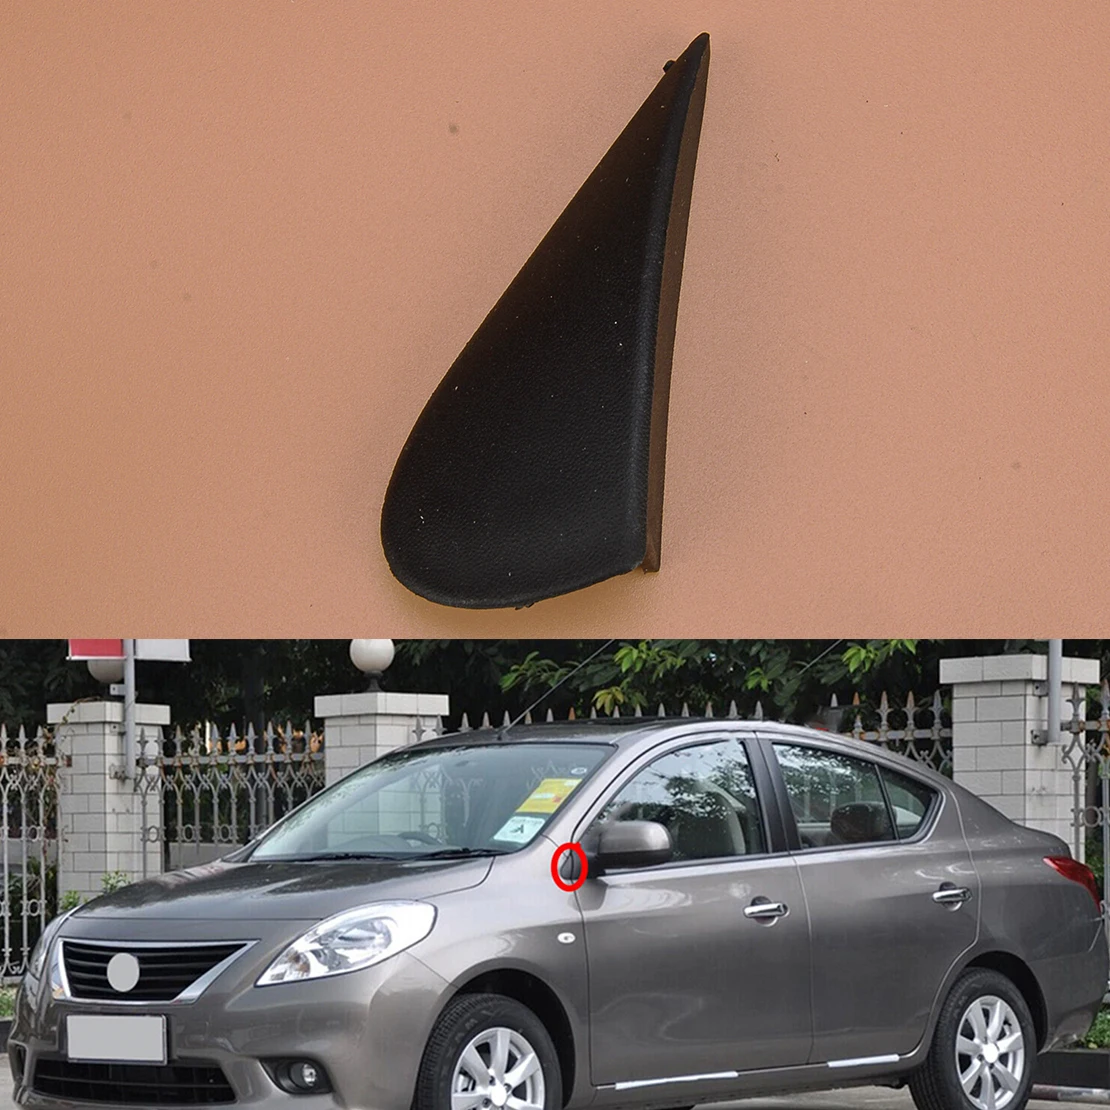 

Автомобильное левое внешнее зеркало заднего вида, Угловое треугольное покрытие 963193AW0A, подходит для Nissan Versa 2014 2013 2012